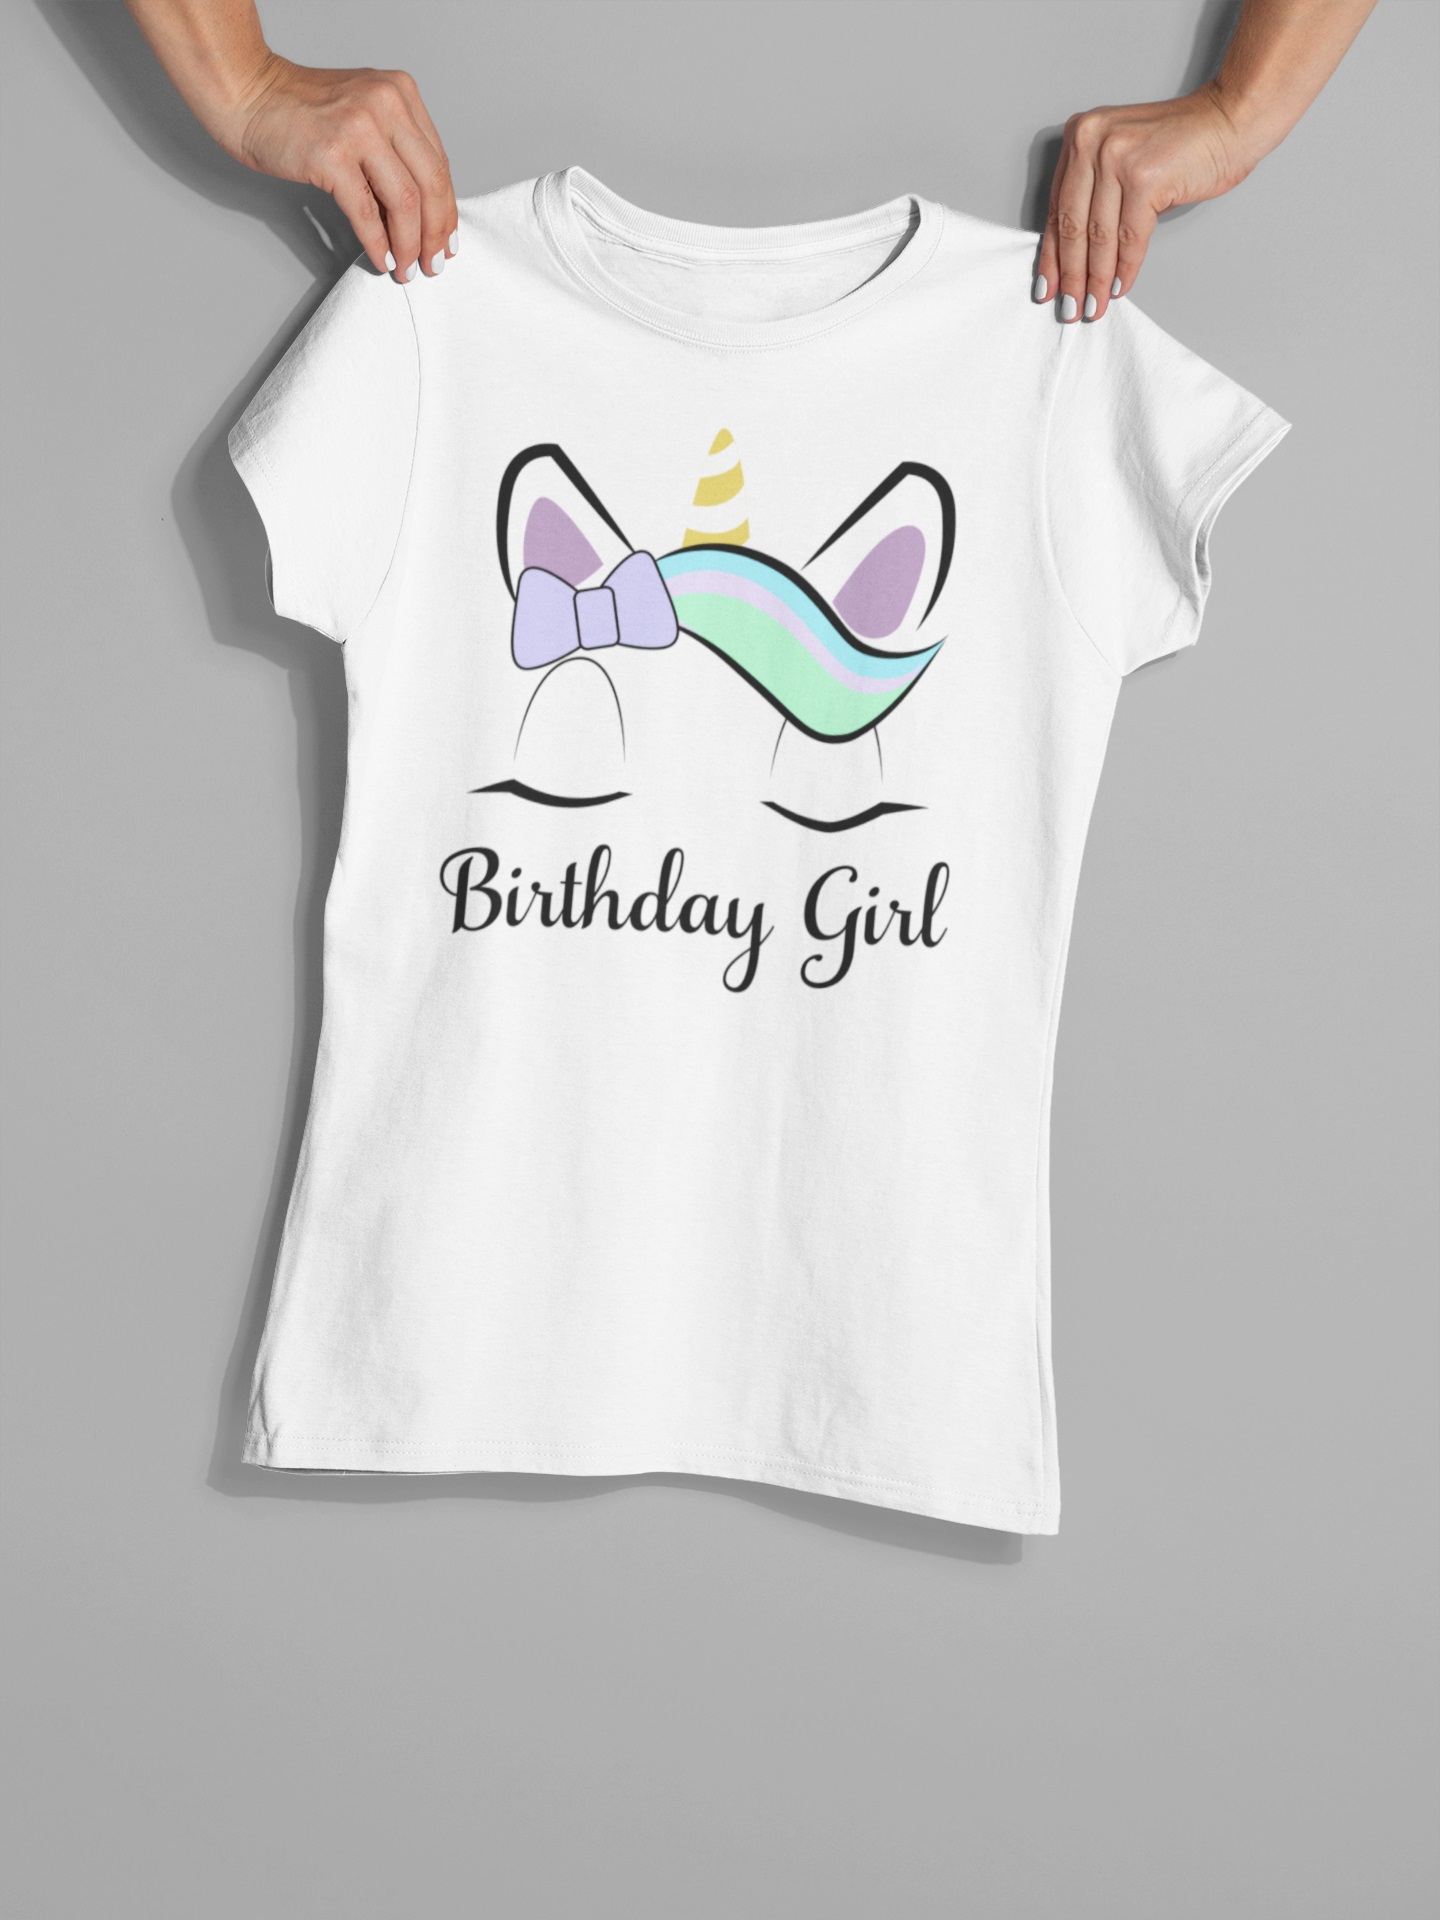 Old Glory Juniors Birthday Girl Unicorn Short Sleeve Graphic T Shirt - image 5 of 6